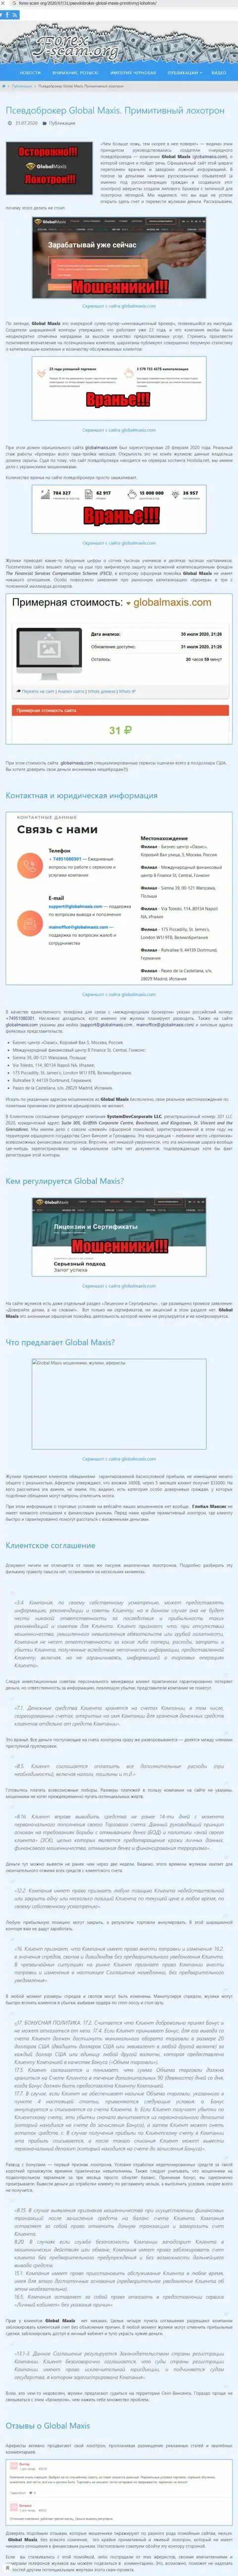 ЖУЛЬНИЧЕСТВО, СЛИВ и ВРАНЬЕ - обзор афер компании GlobalMaxis